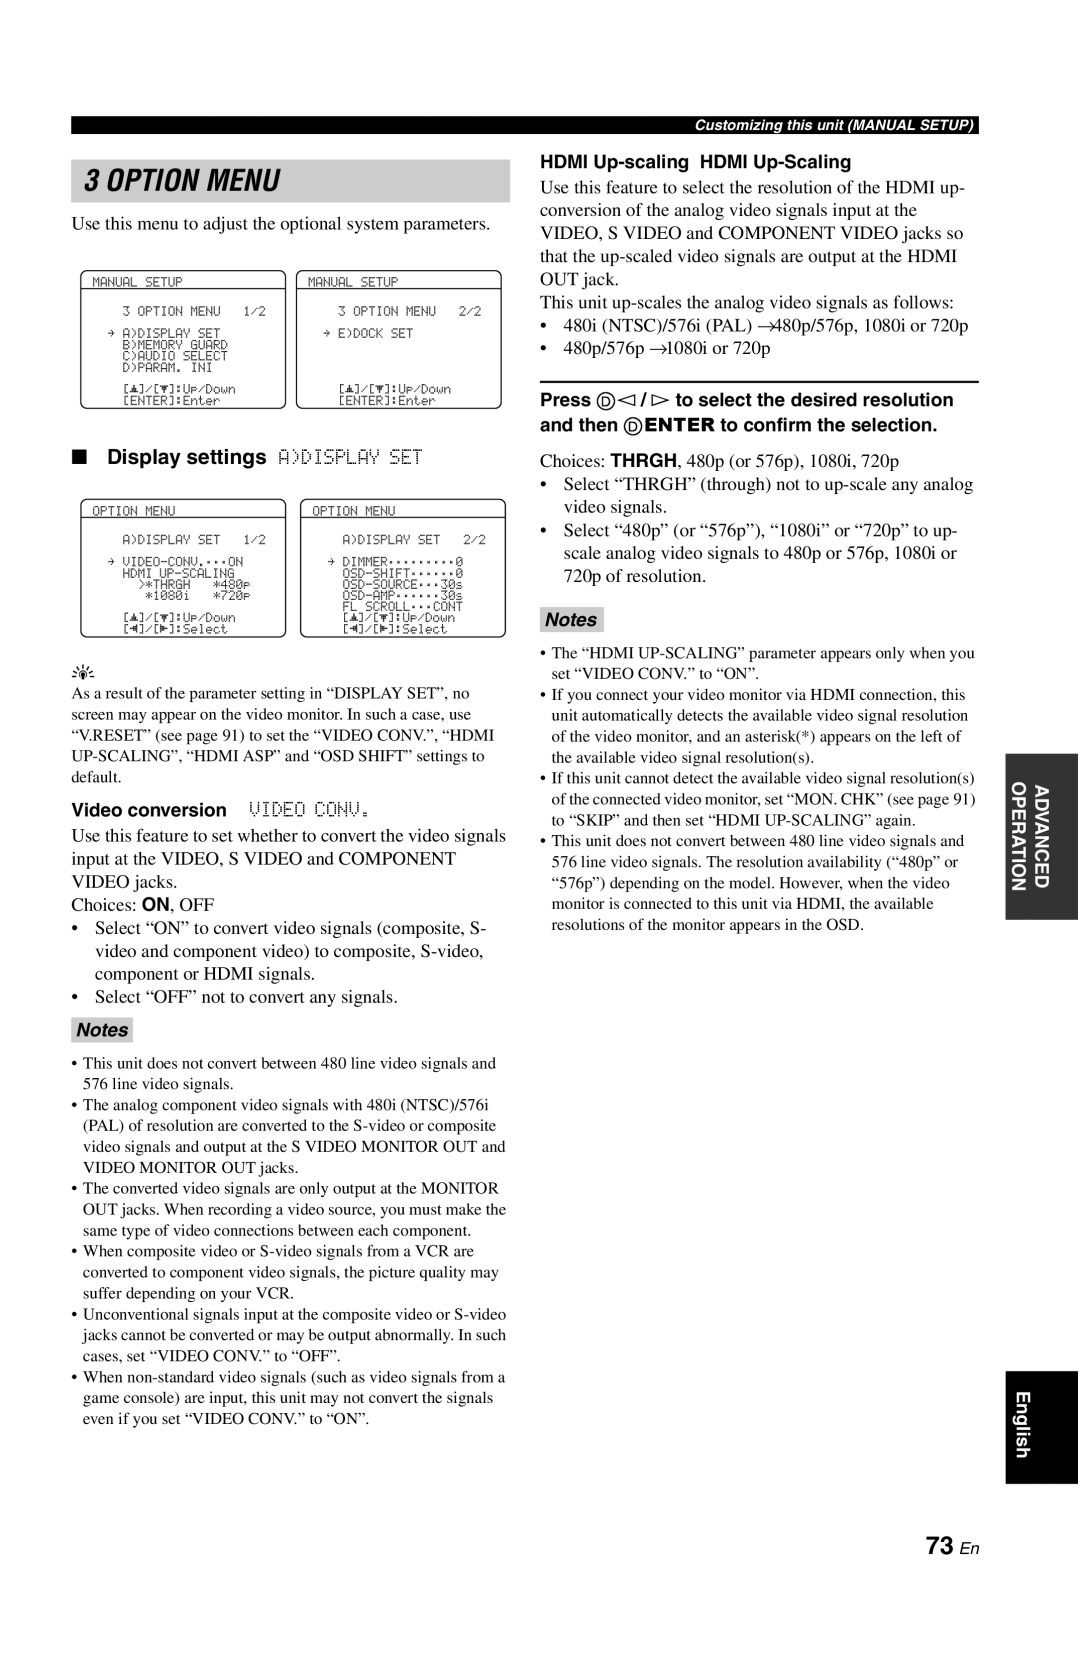 Yamaha DSP-AX861SE owner manual Option Menu, 73 En, Display settings ADISPLAY SET, Video conversion VIDEO CONV, Notes 